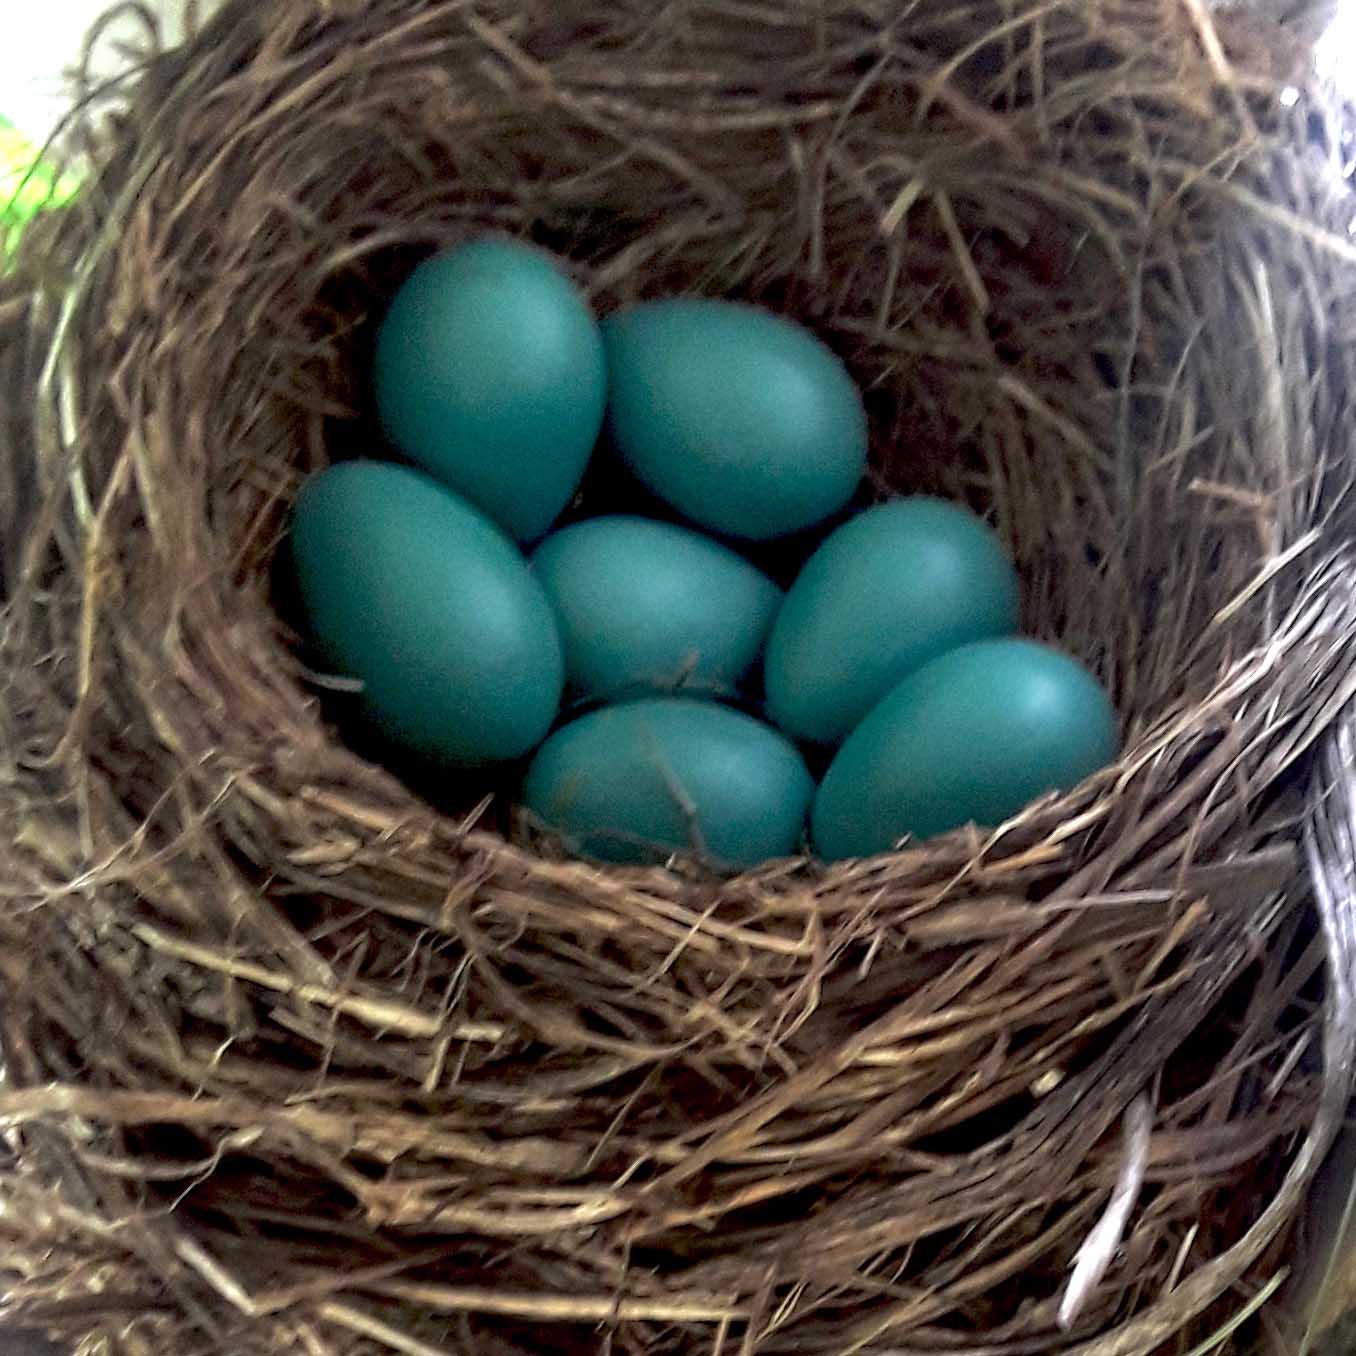 seven blue eggs in nest